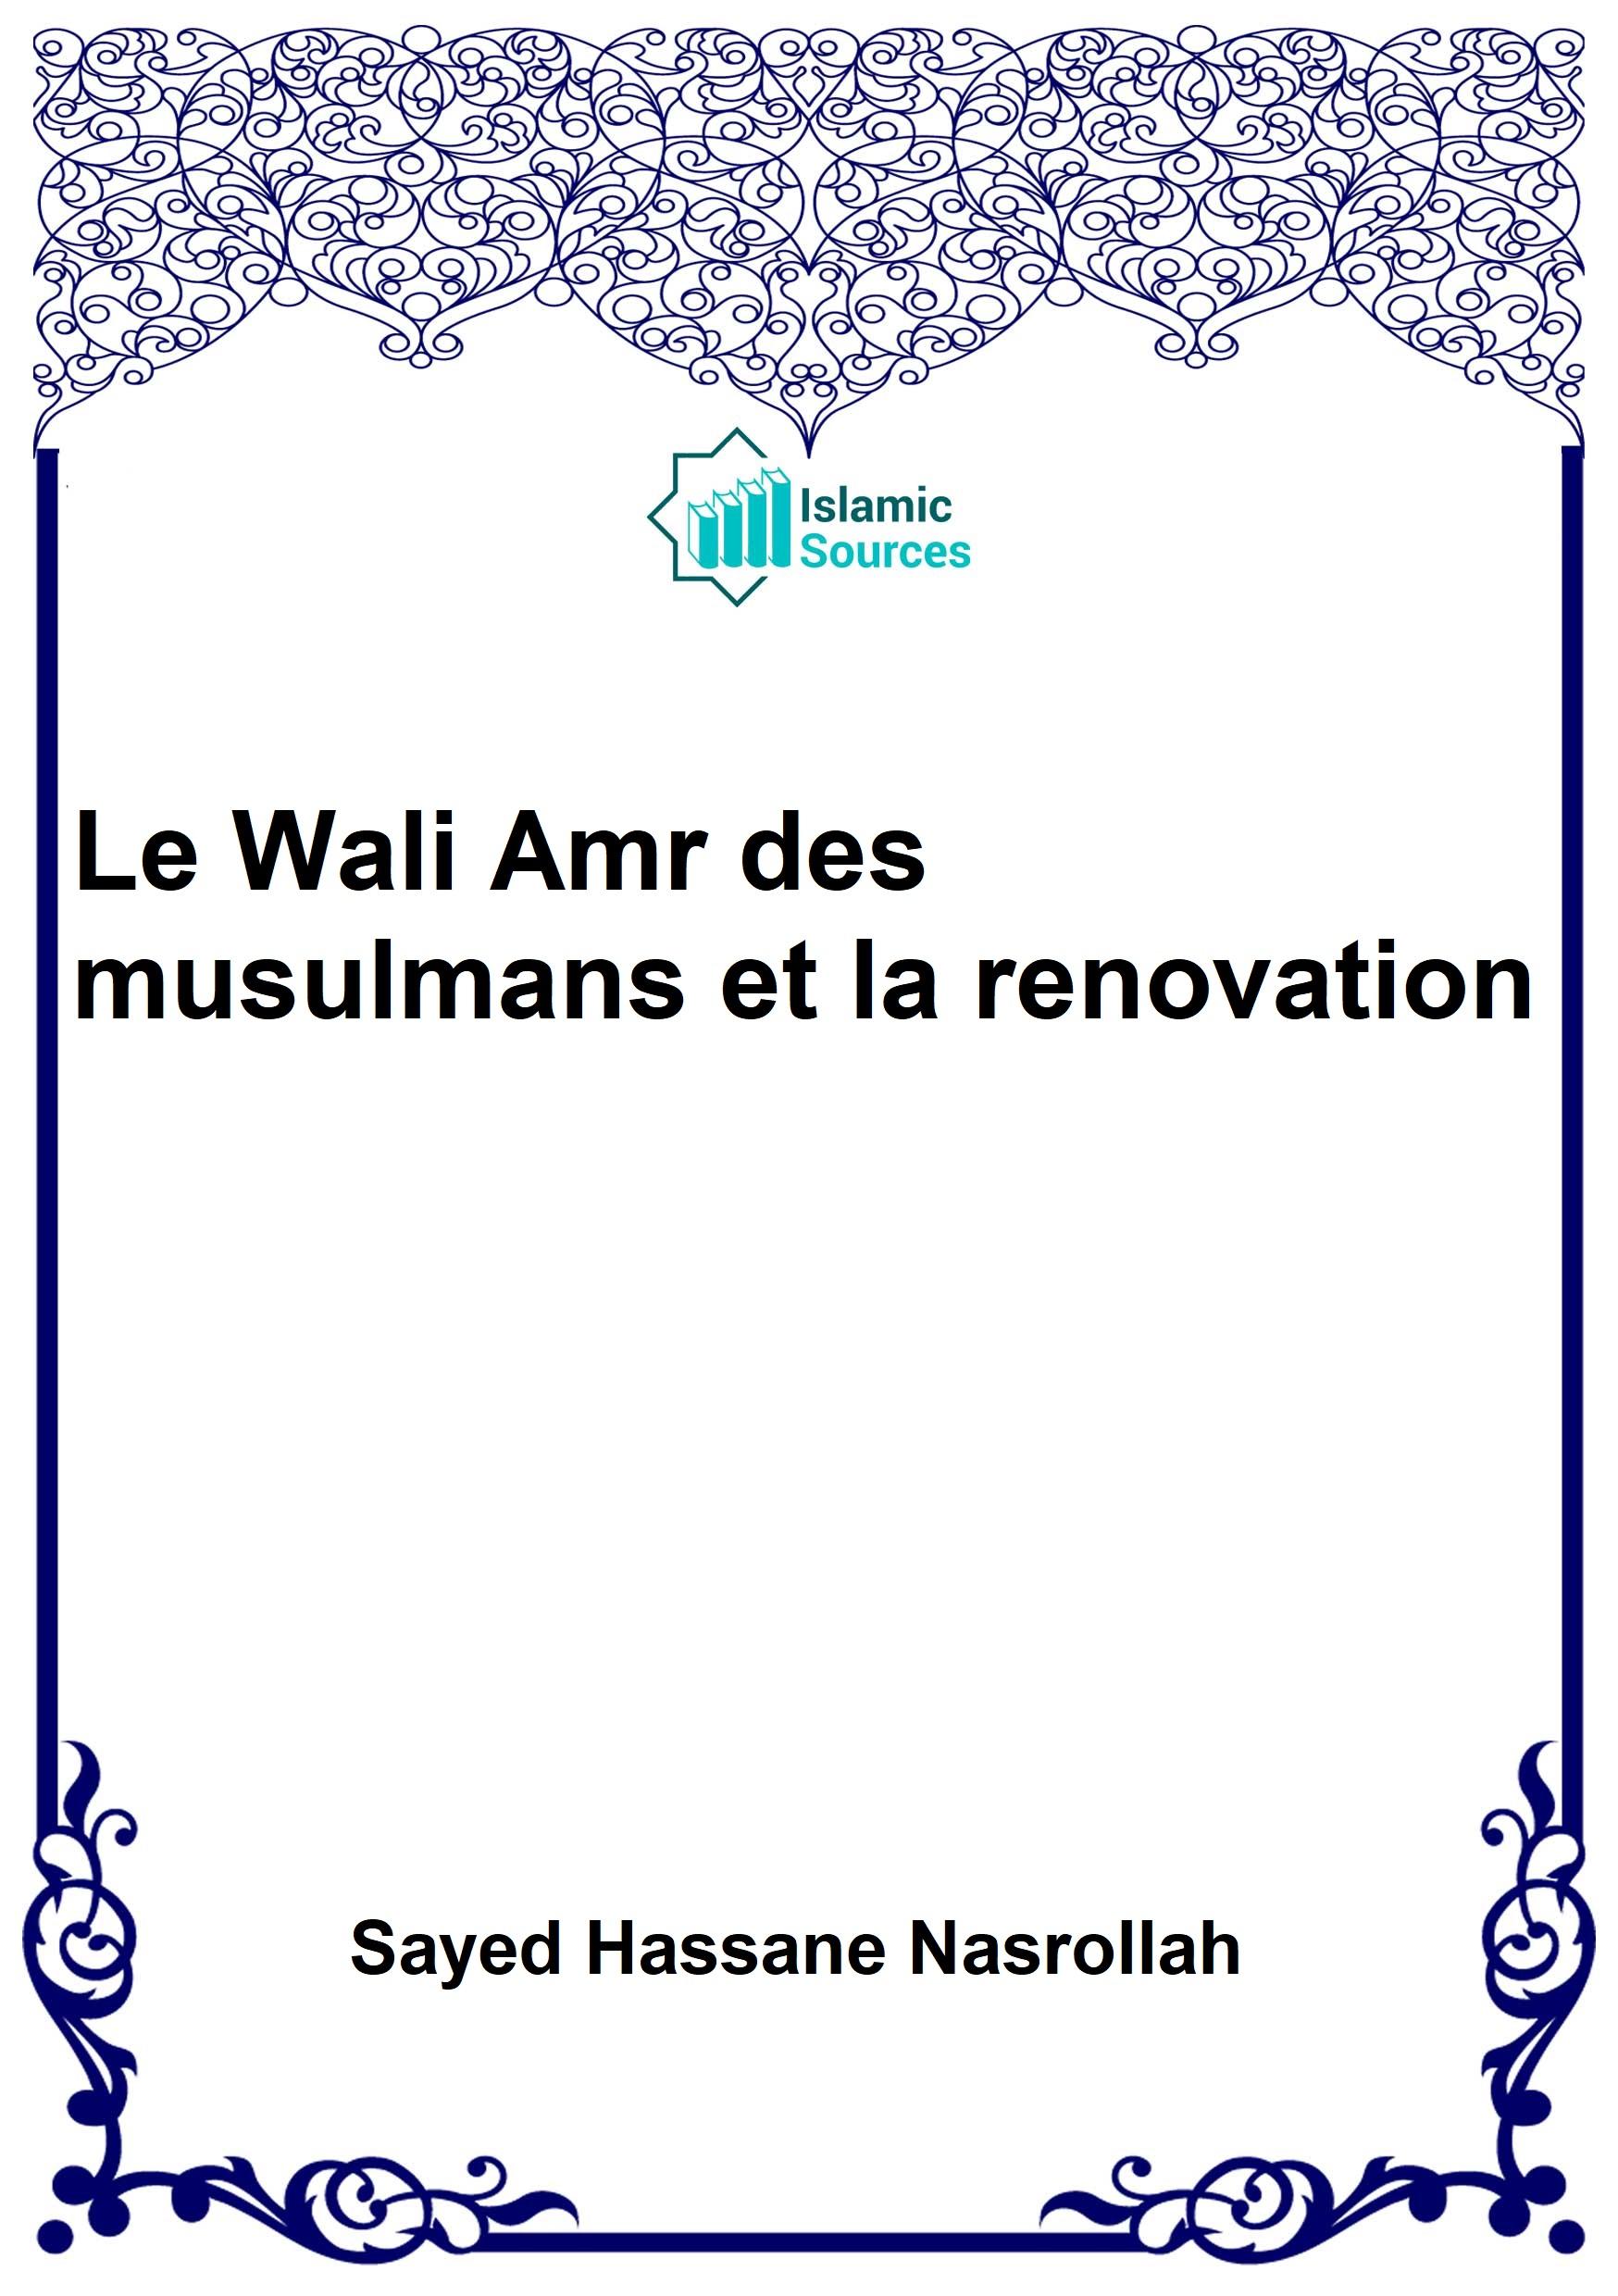 Le Wali Amr des musulmans et la renovation